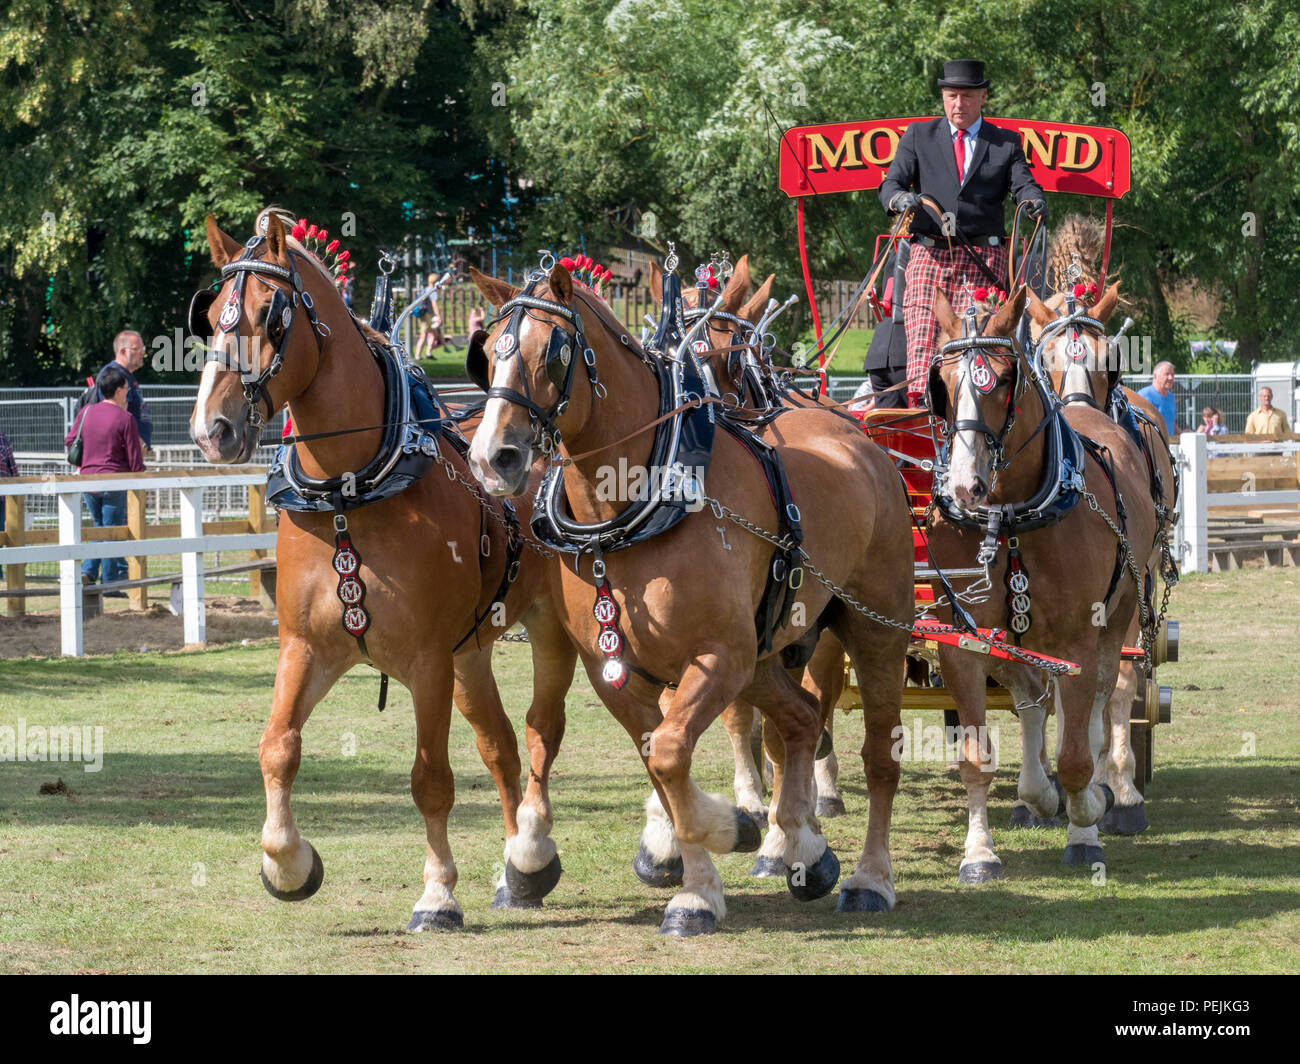 Turriff, Ecosse - Aug 06, 2018 : Affichage des chevaux et les wagons pendant la cheval lourd de participation à l'Exposition agricole Turriff en Ecosse. Banque D'Images